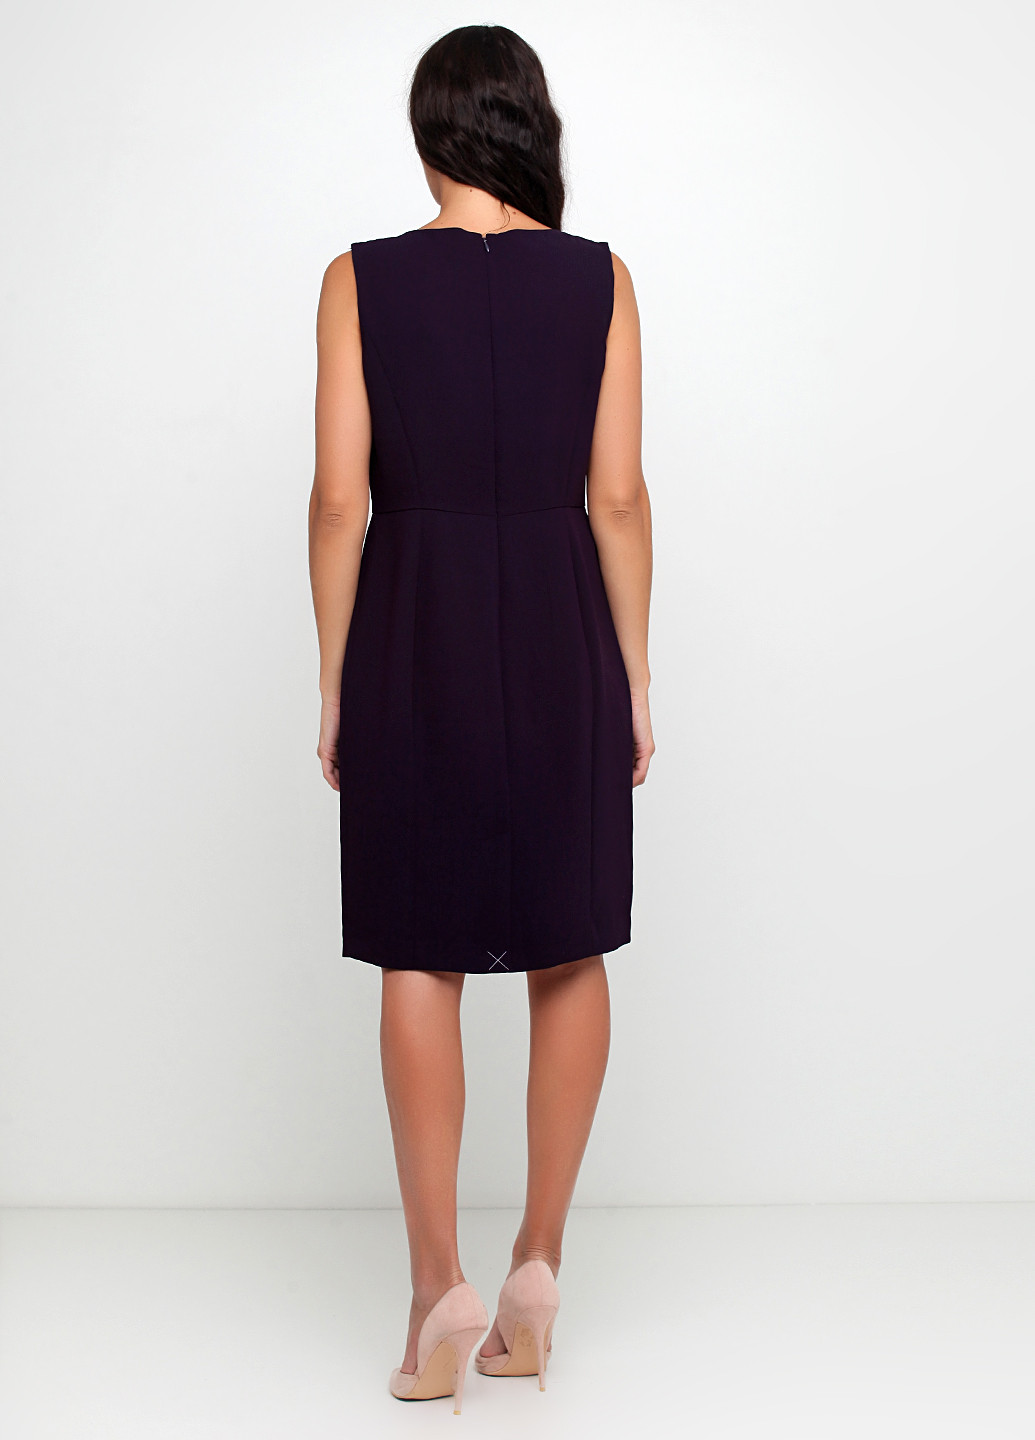 Темно-фиолетовое деловое платье футляр Talbots однотонное